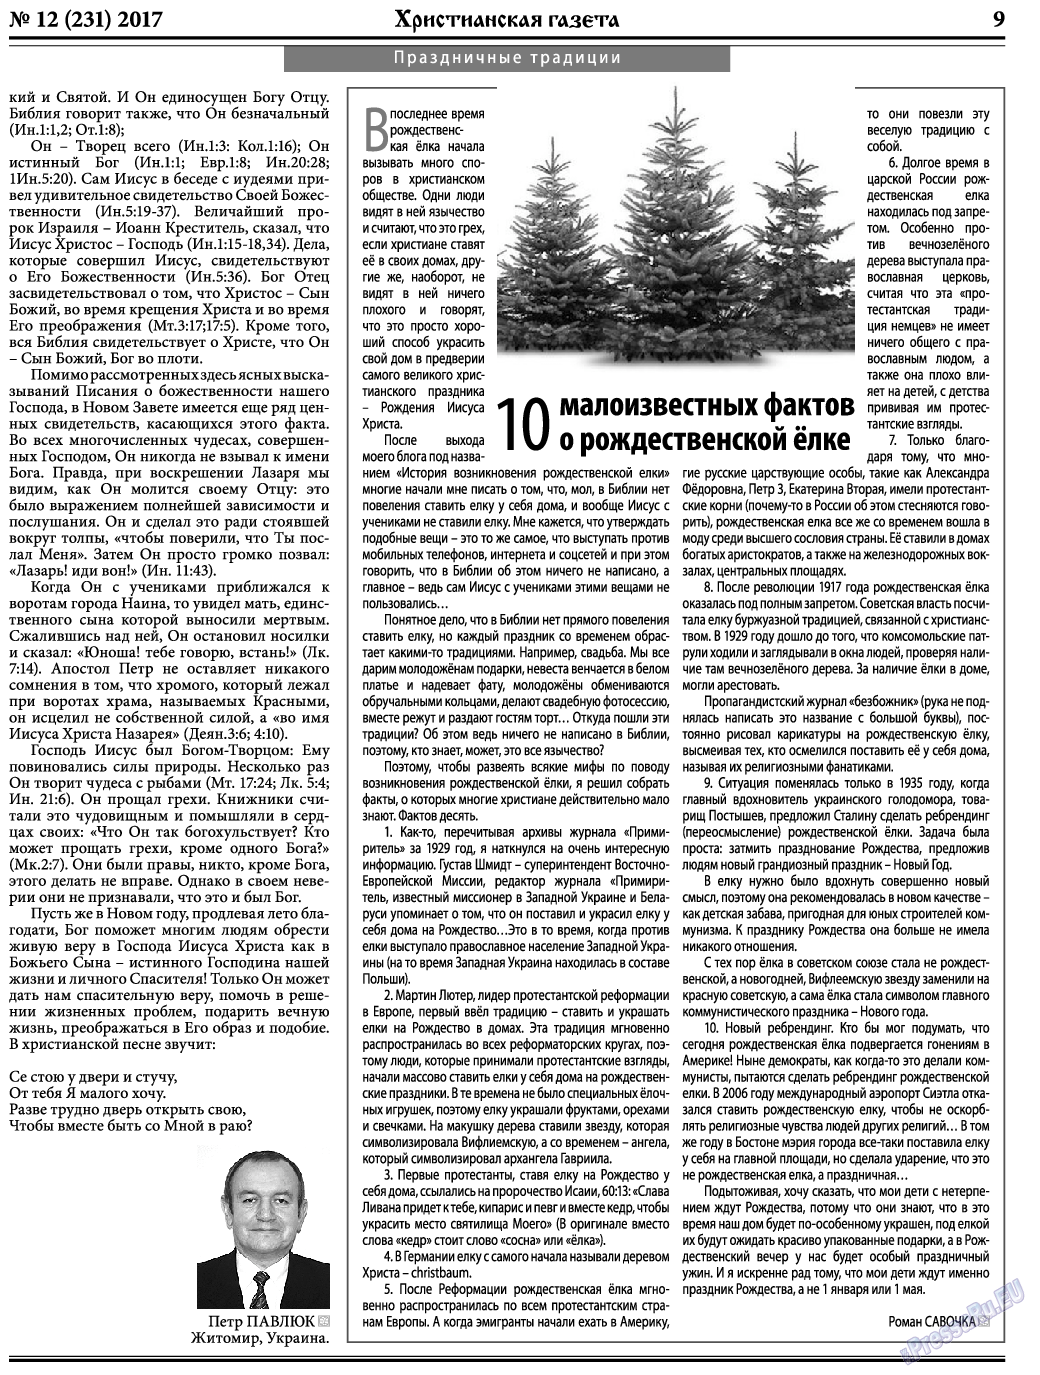 Христианская газета, газета. 2017 №12 стр.9